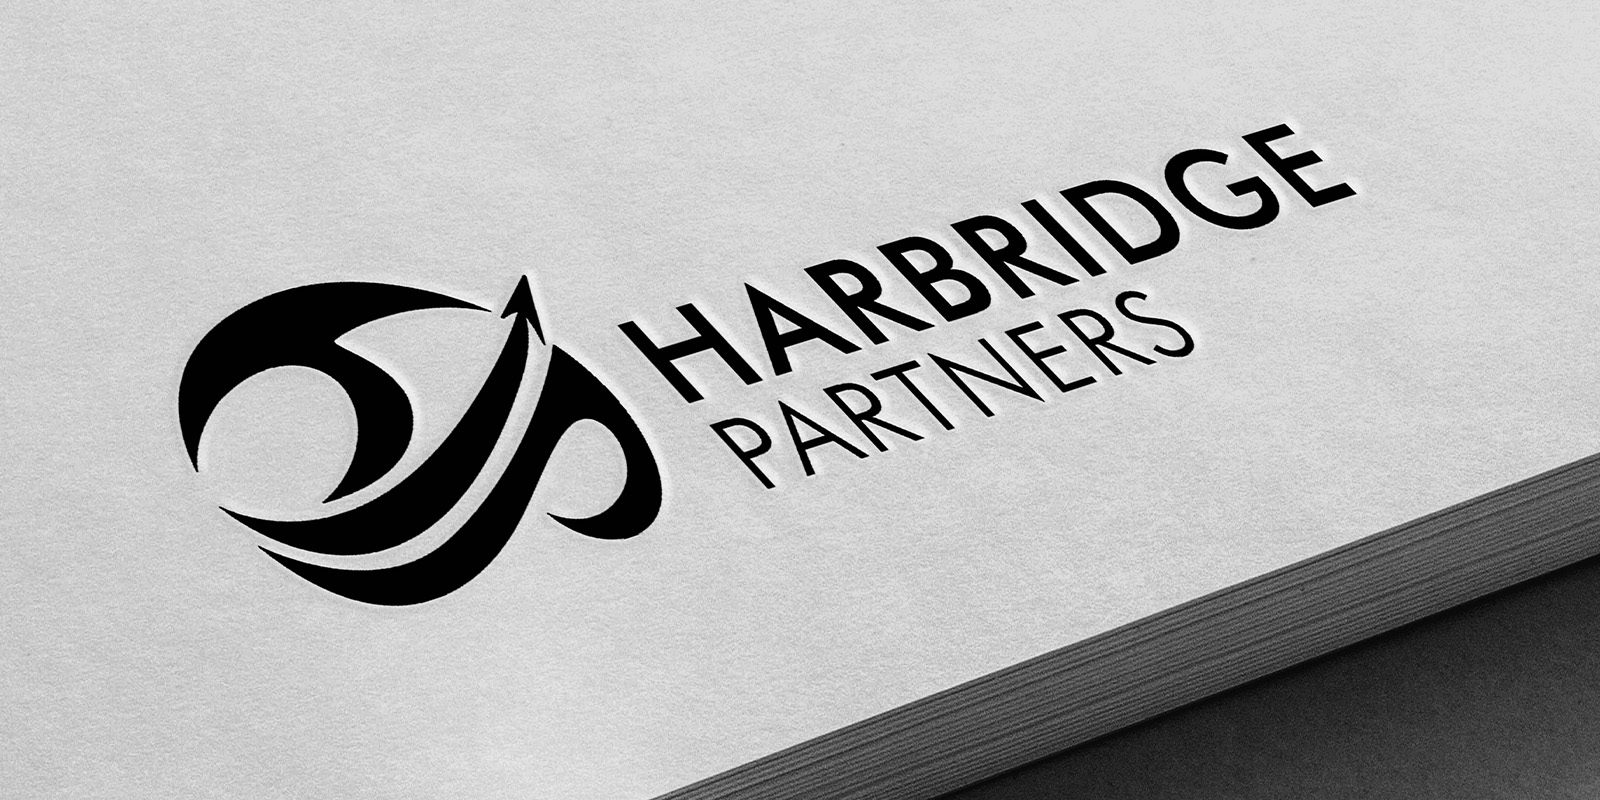 Harbridge Partners full logo printed on textured paper